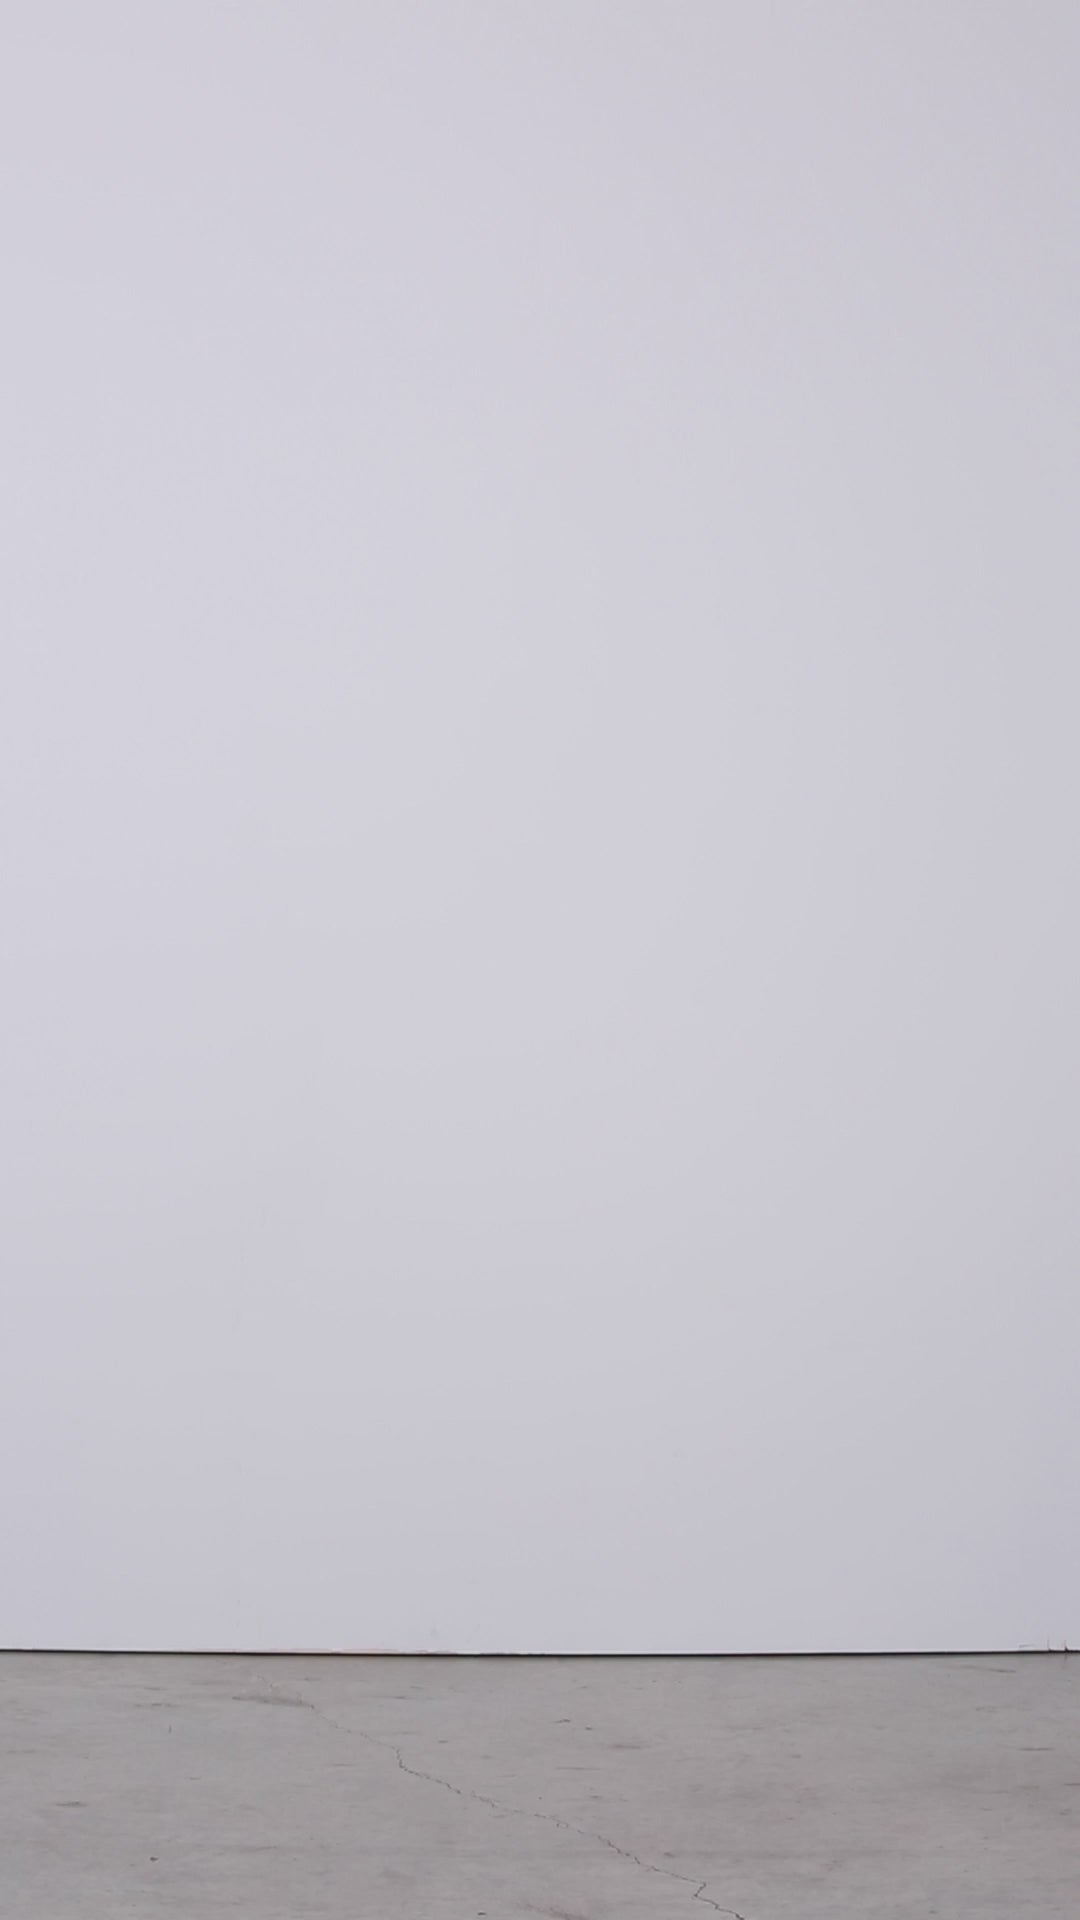 Deneuve - Fringed French Tweed Portrait Jacket - VIDEO